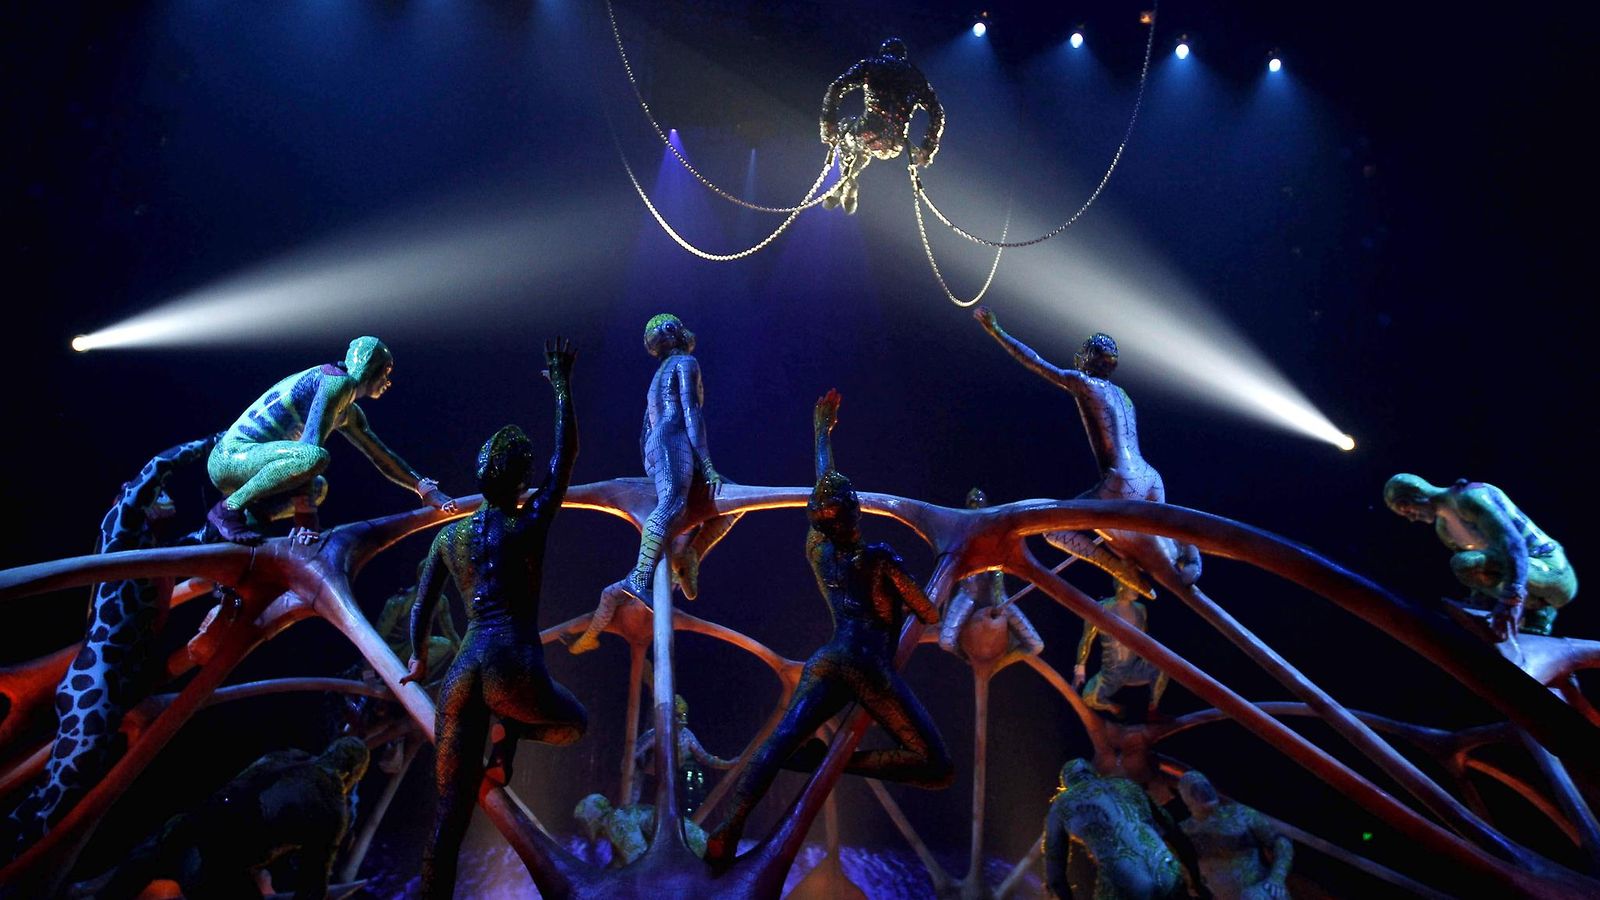 Suomalaisten rakastama sirkusryhmä Cirque du Soleil hakeutuu konkurssiin –  taloudellisia vaikeuksia jo ennen esitysten peruutuksia 